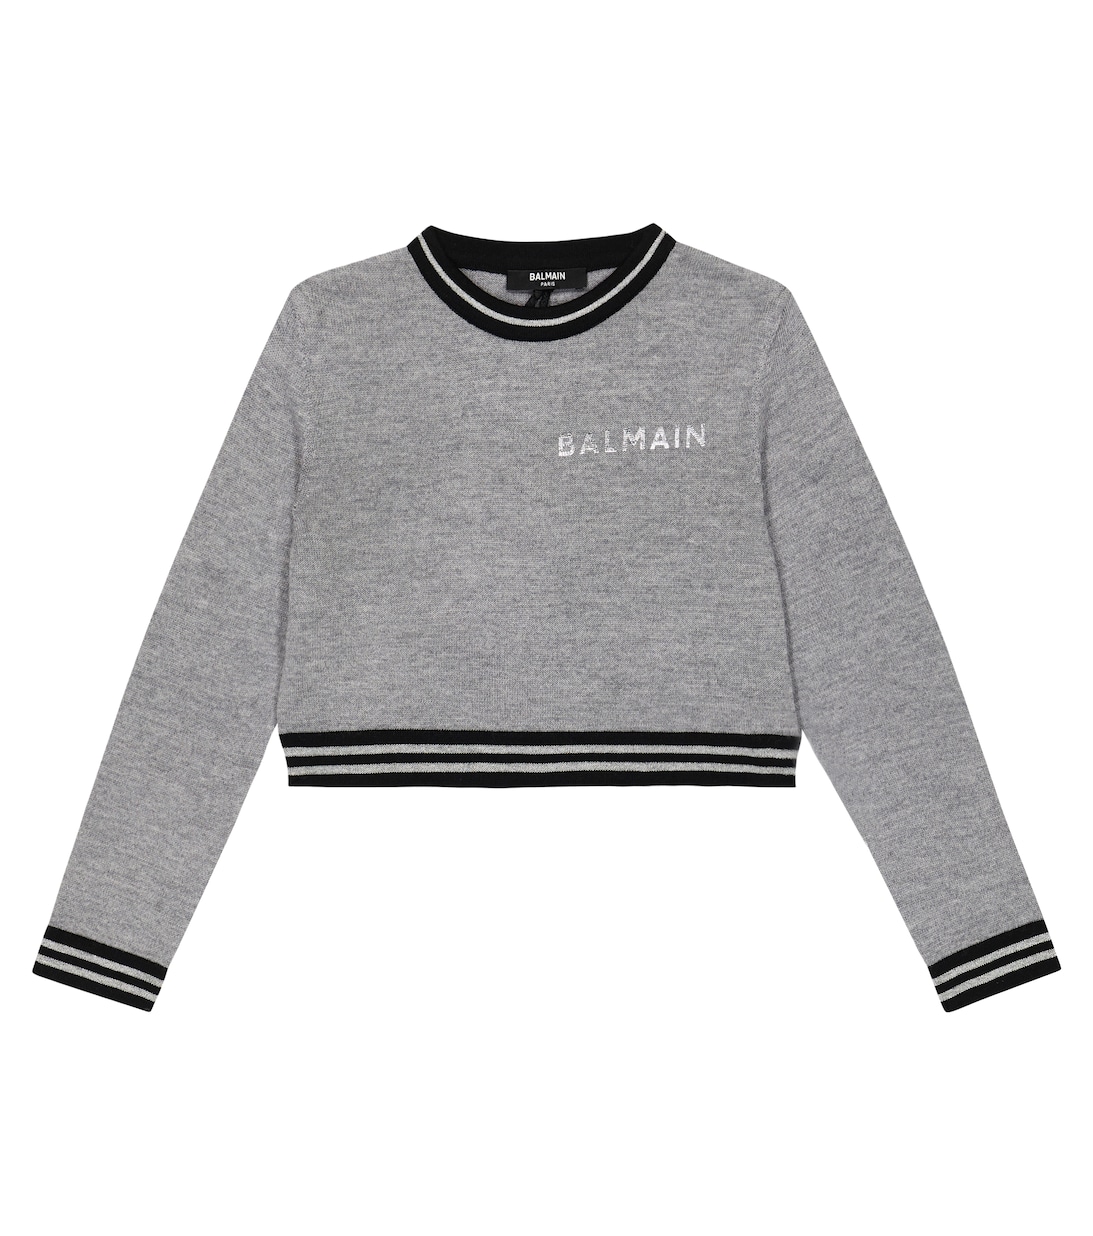 Вязаный шерстяной свитер с логотипом Balmain, серый